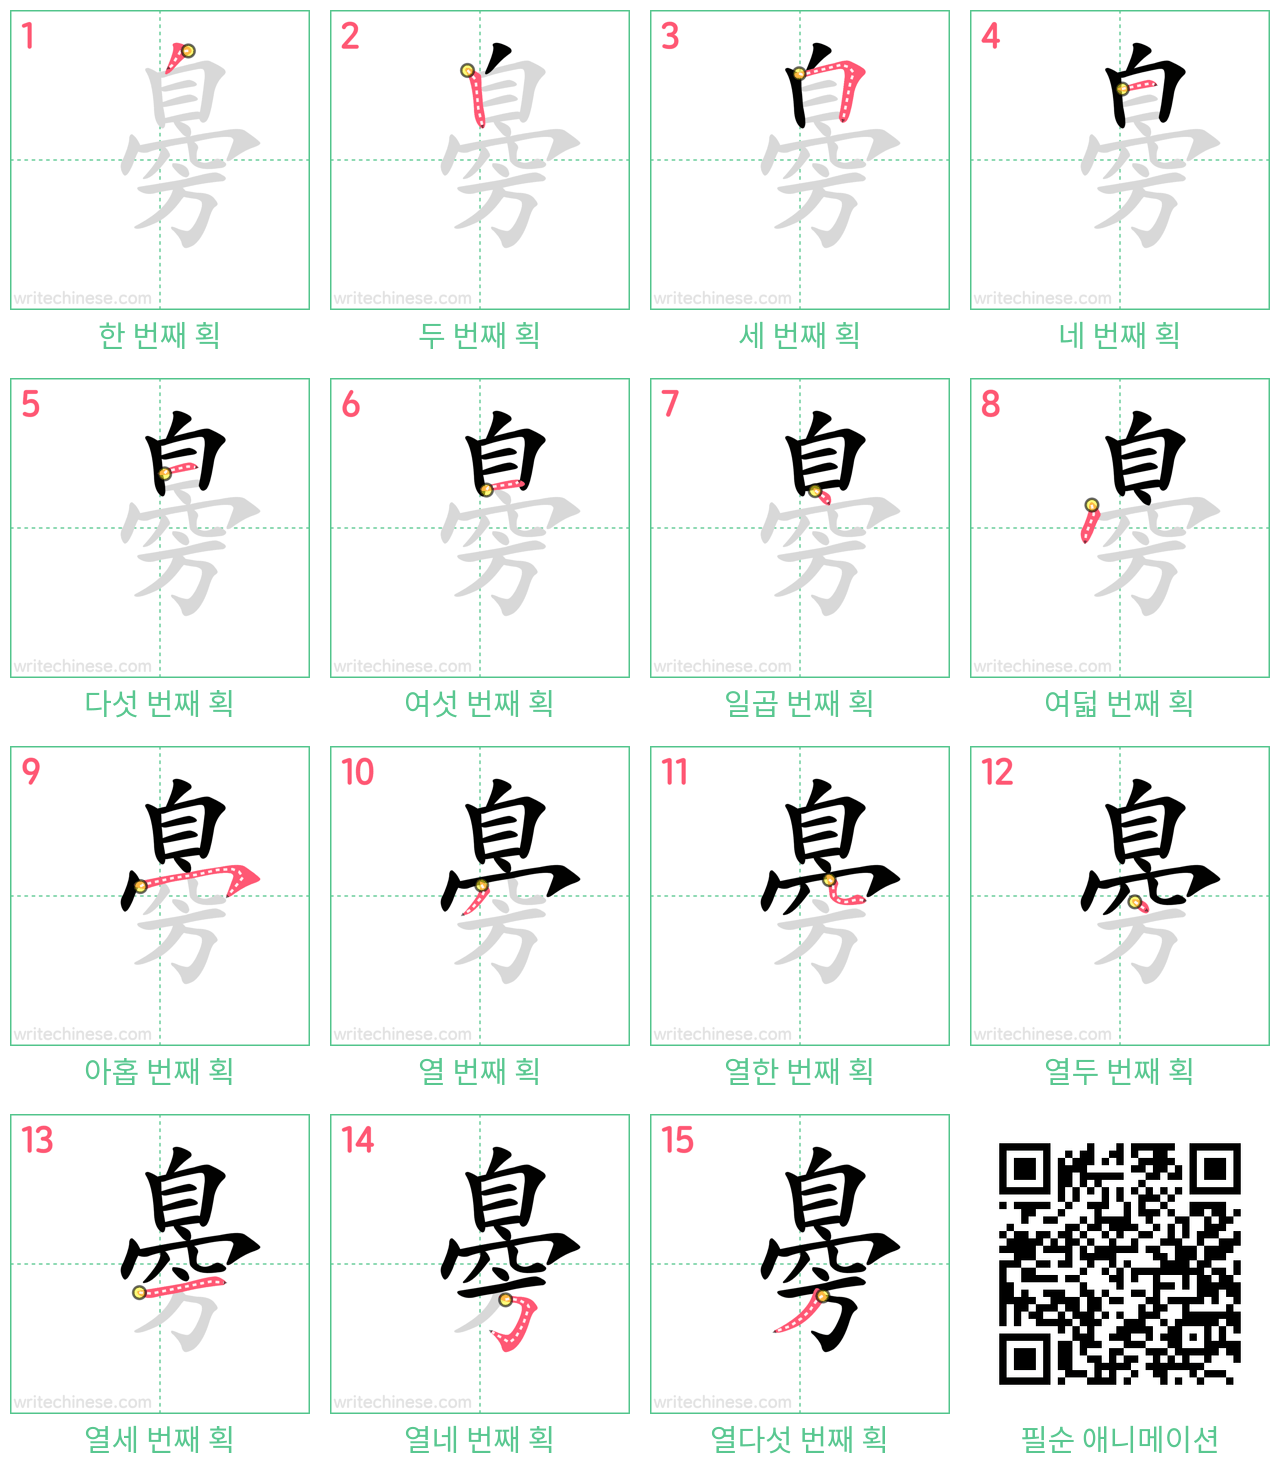 臱 step-by-step stroke order diagrams